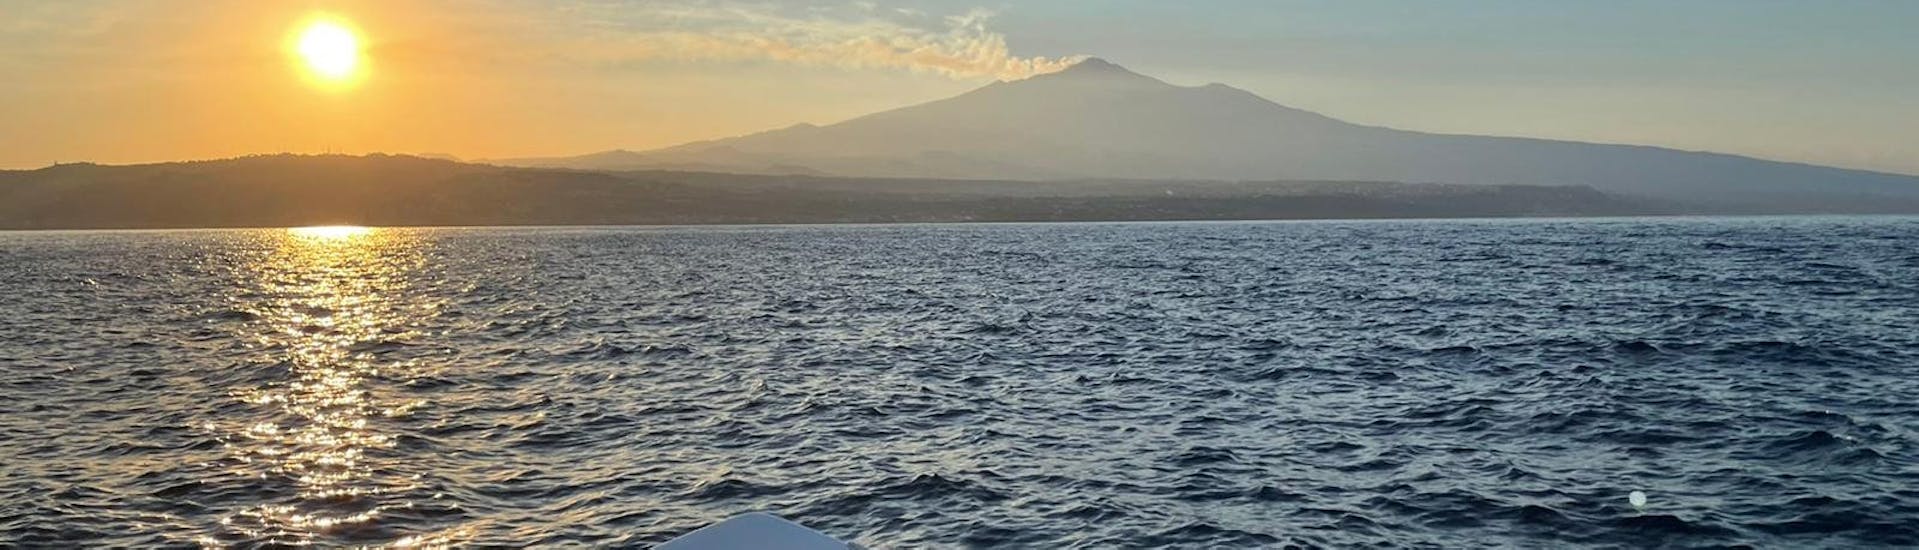 De zonsondergang over de Etna gezien vanaf de boot van Navigando per Trezza tijdens de Boottocht vanuit Aci Trezza met Apéritif.